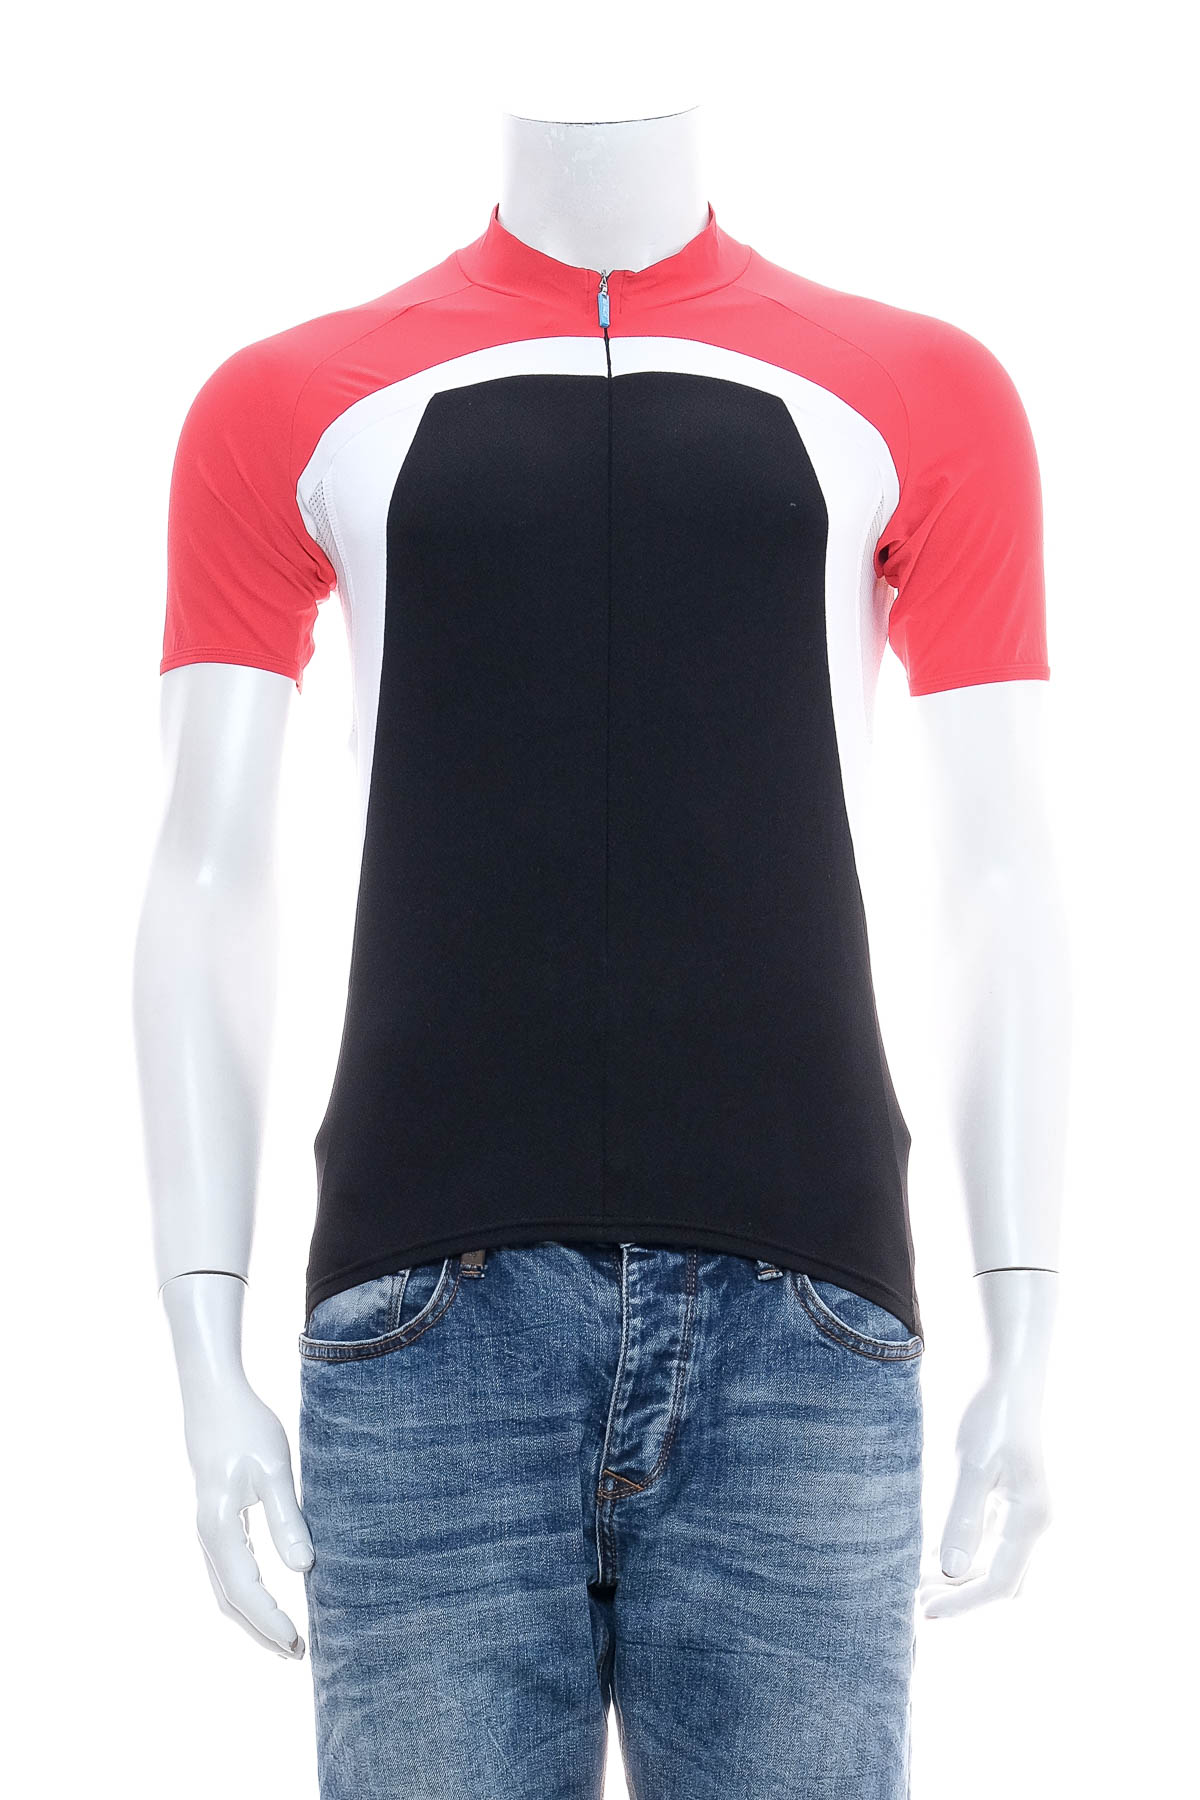 Men's T-shirt for cycling - BIORACER - 0